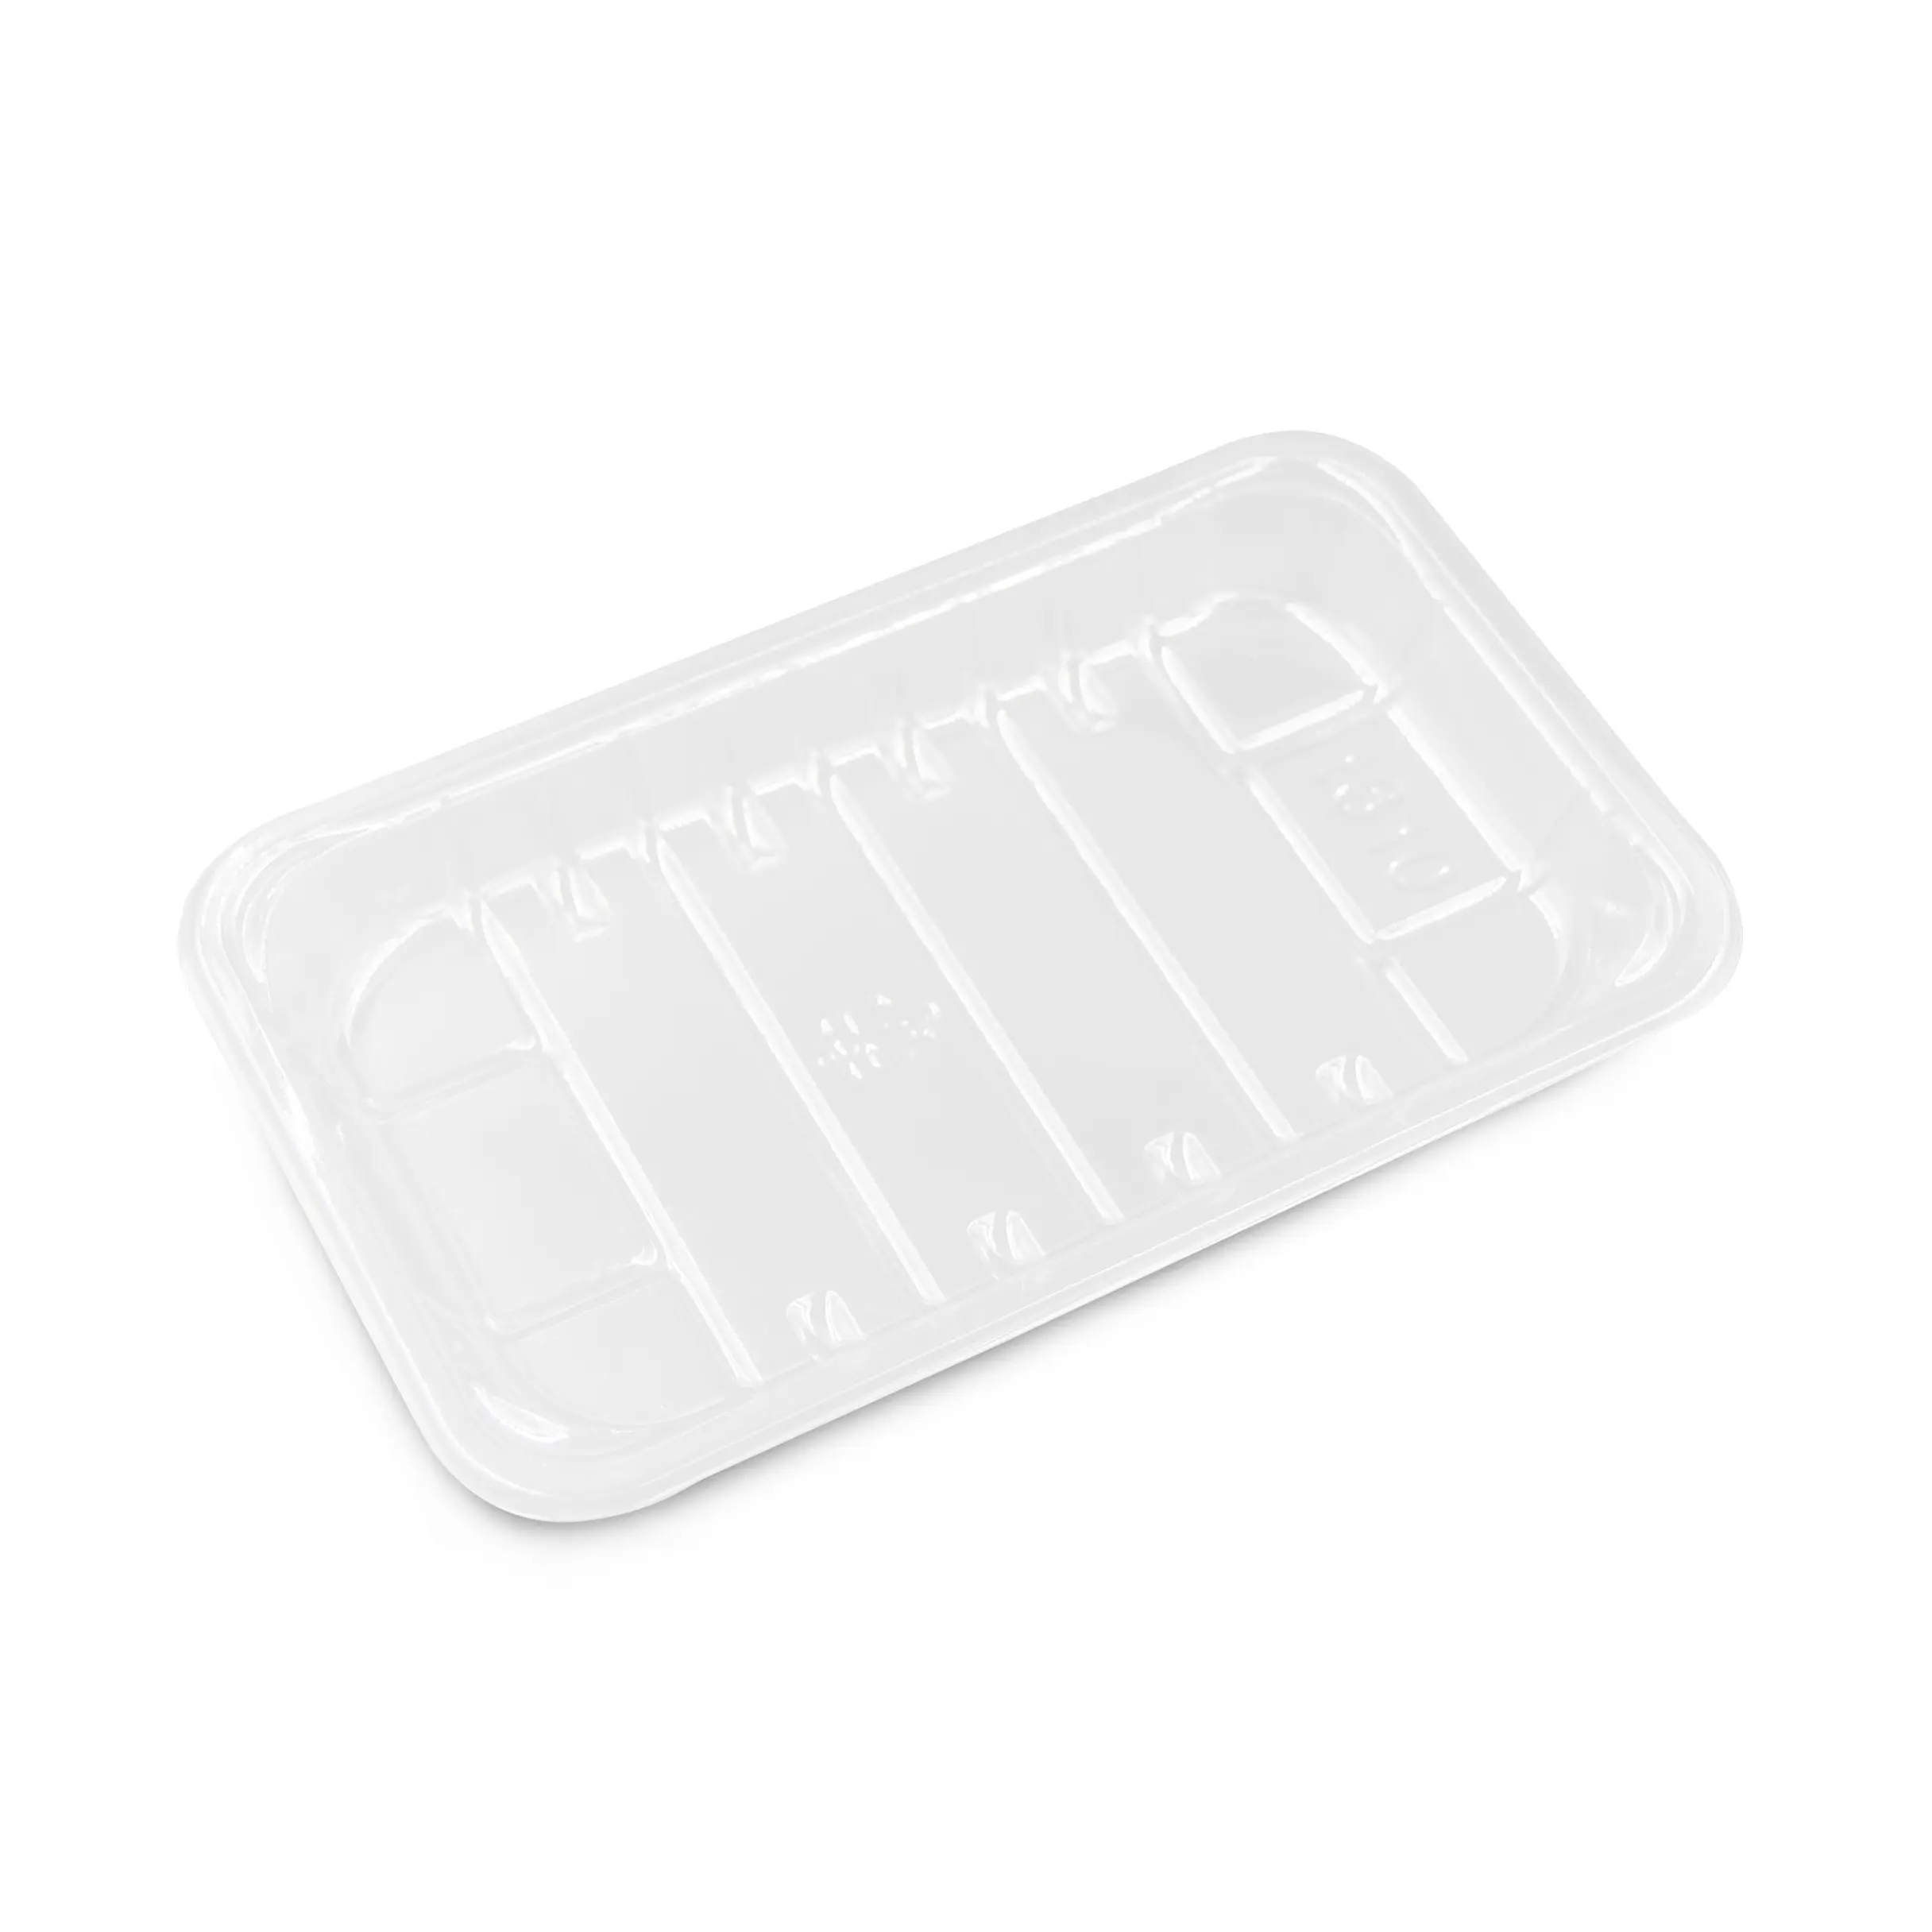 カスタムホットシーリング使い捨てPET透明プラスチック冷凍食品豆腐ケーキミートパイトレイ包装容器